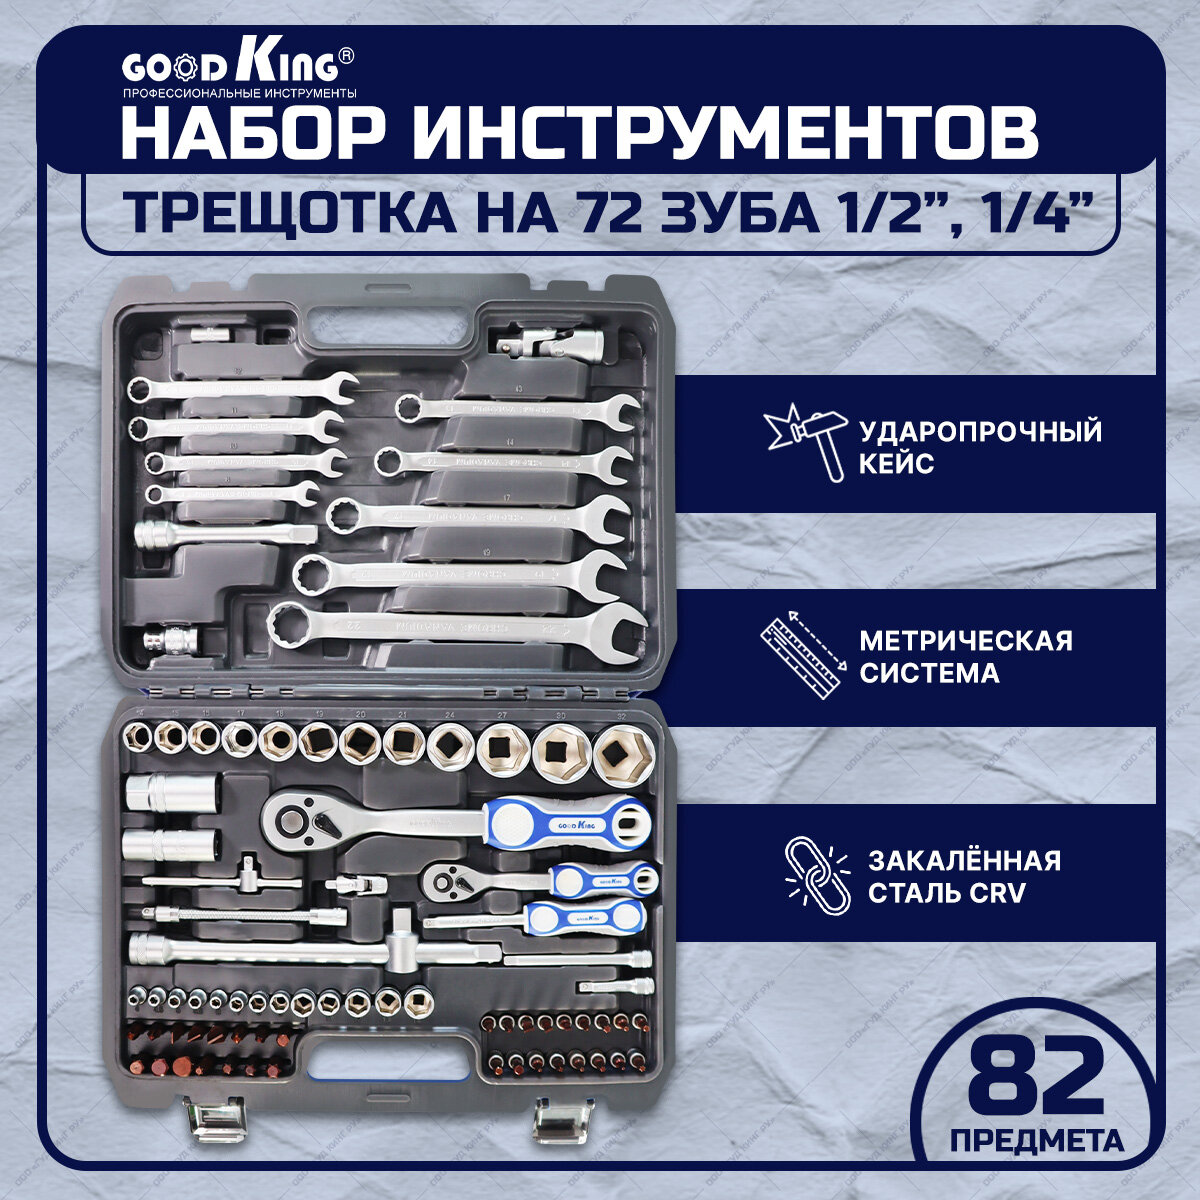 Набор инструментов 82 предмета 1/4" 1/2" трещотка 72 зуба GOODKING B-10082 торцевые головки, биты, комбинированный ключ, трещеточный ключ, tools, для дома, для автомобиля